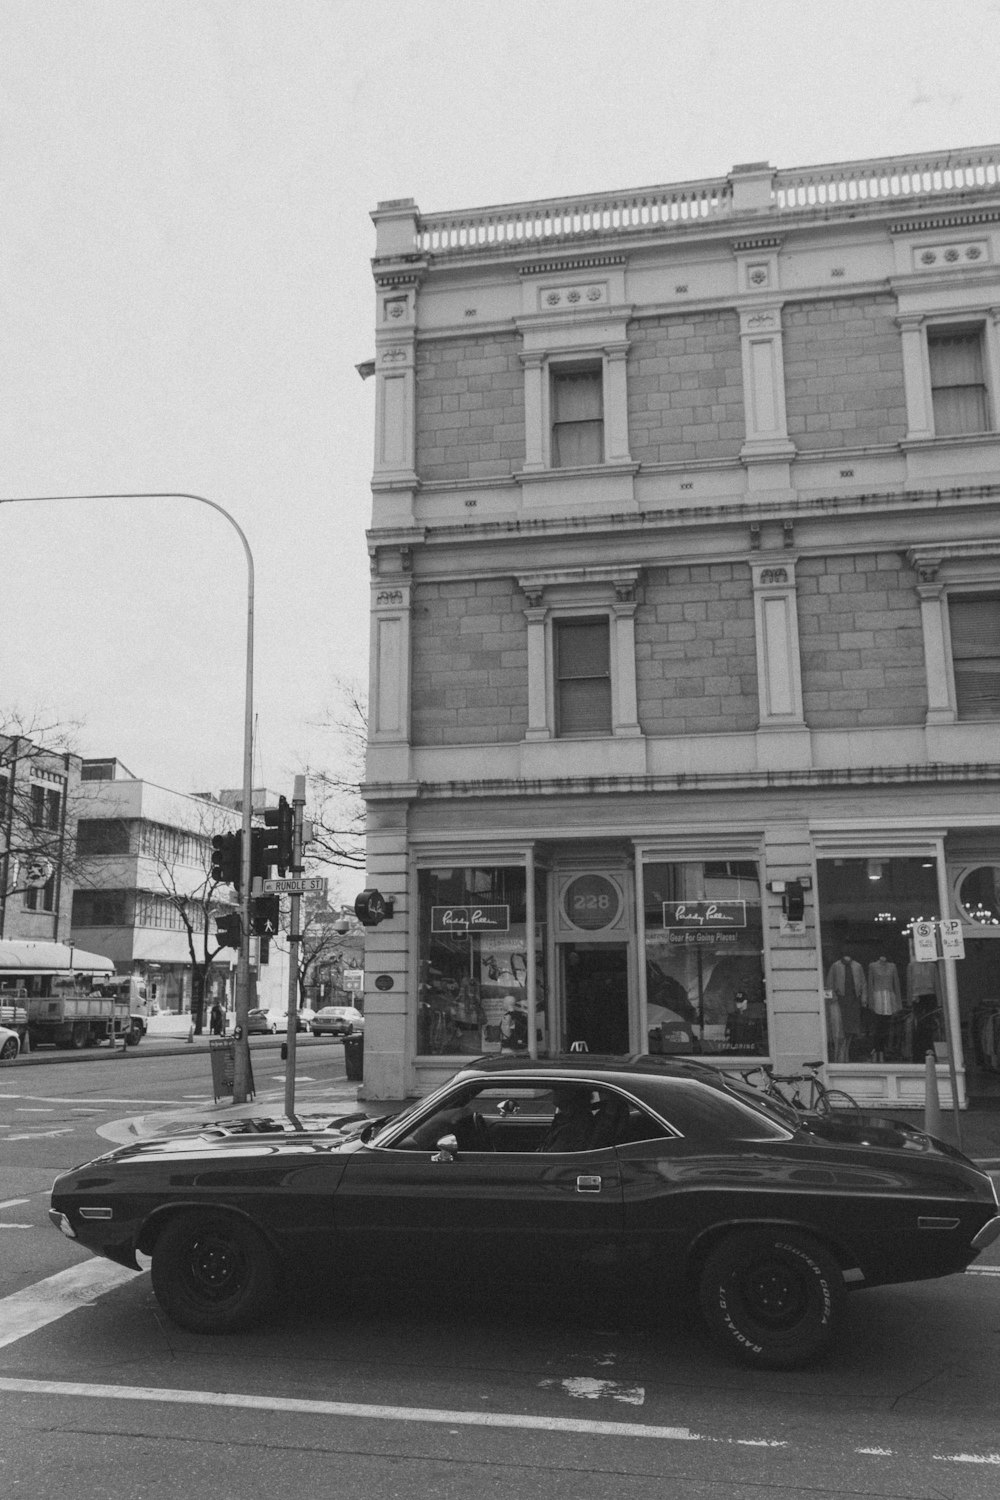 Una foto en blanco y negro de un coche aparcado frente a un edificio